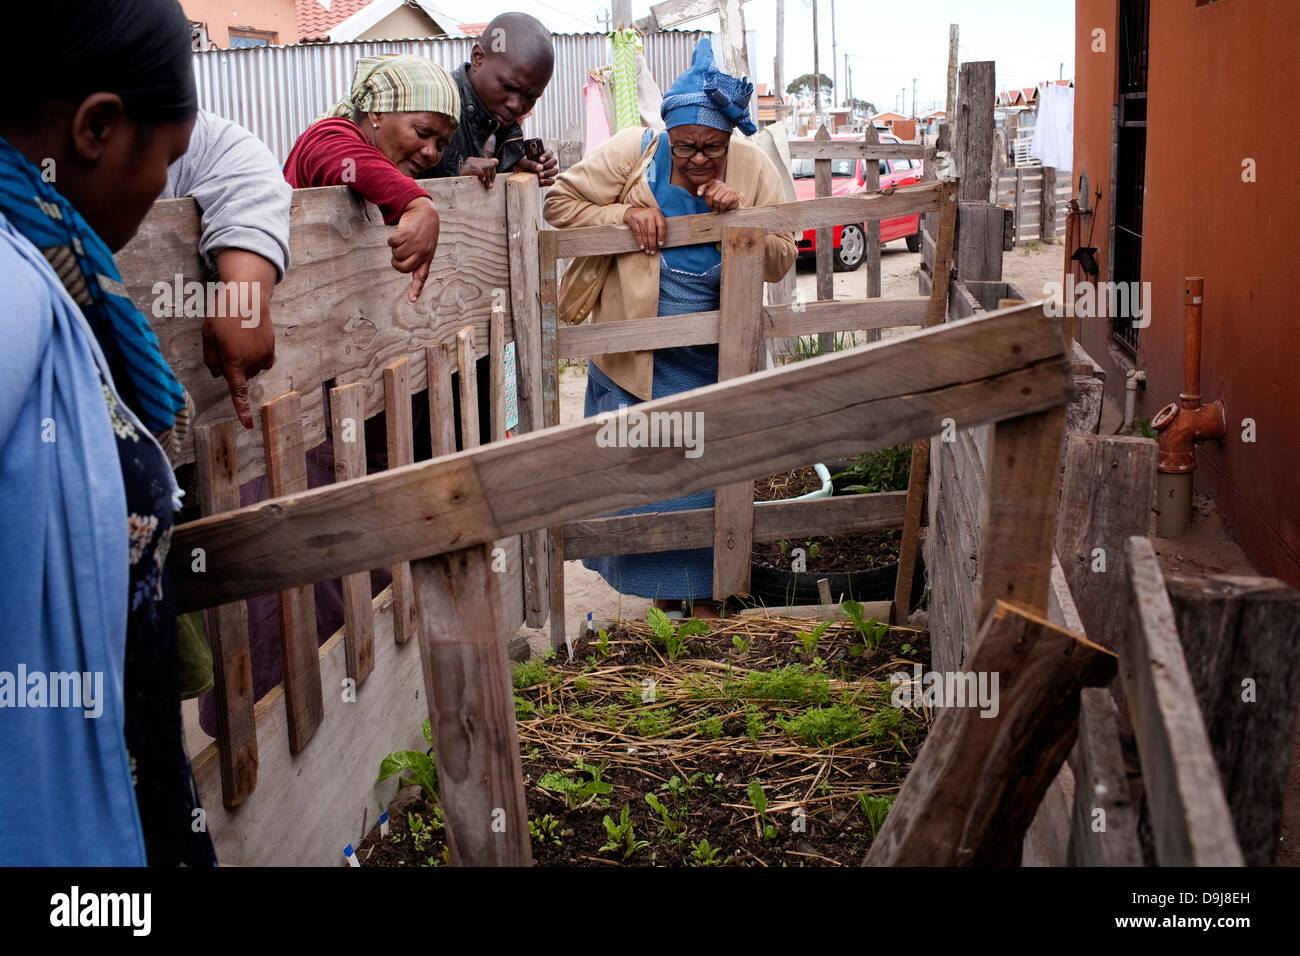 La vida del suelo, las sesiones de capacitación de la comunidad local en Gugulethu enseñó a los participantes las habilidades necesarias para crear vegetales orgánicos Foto de stock